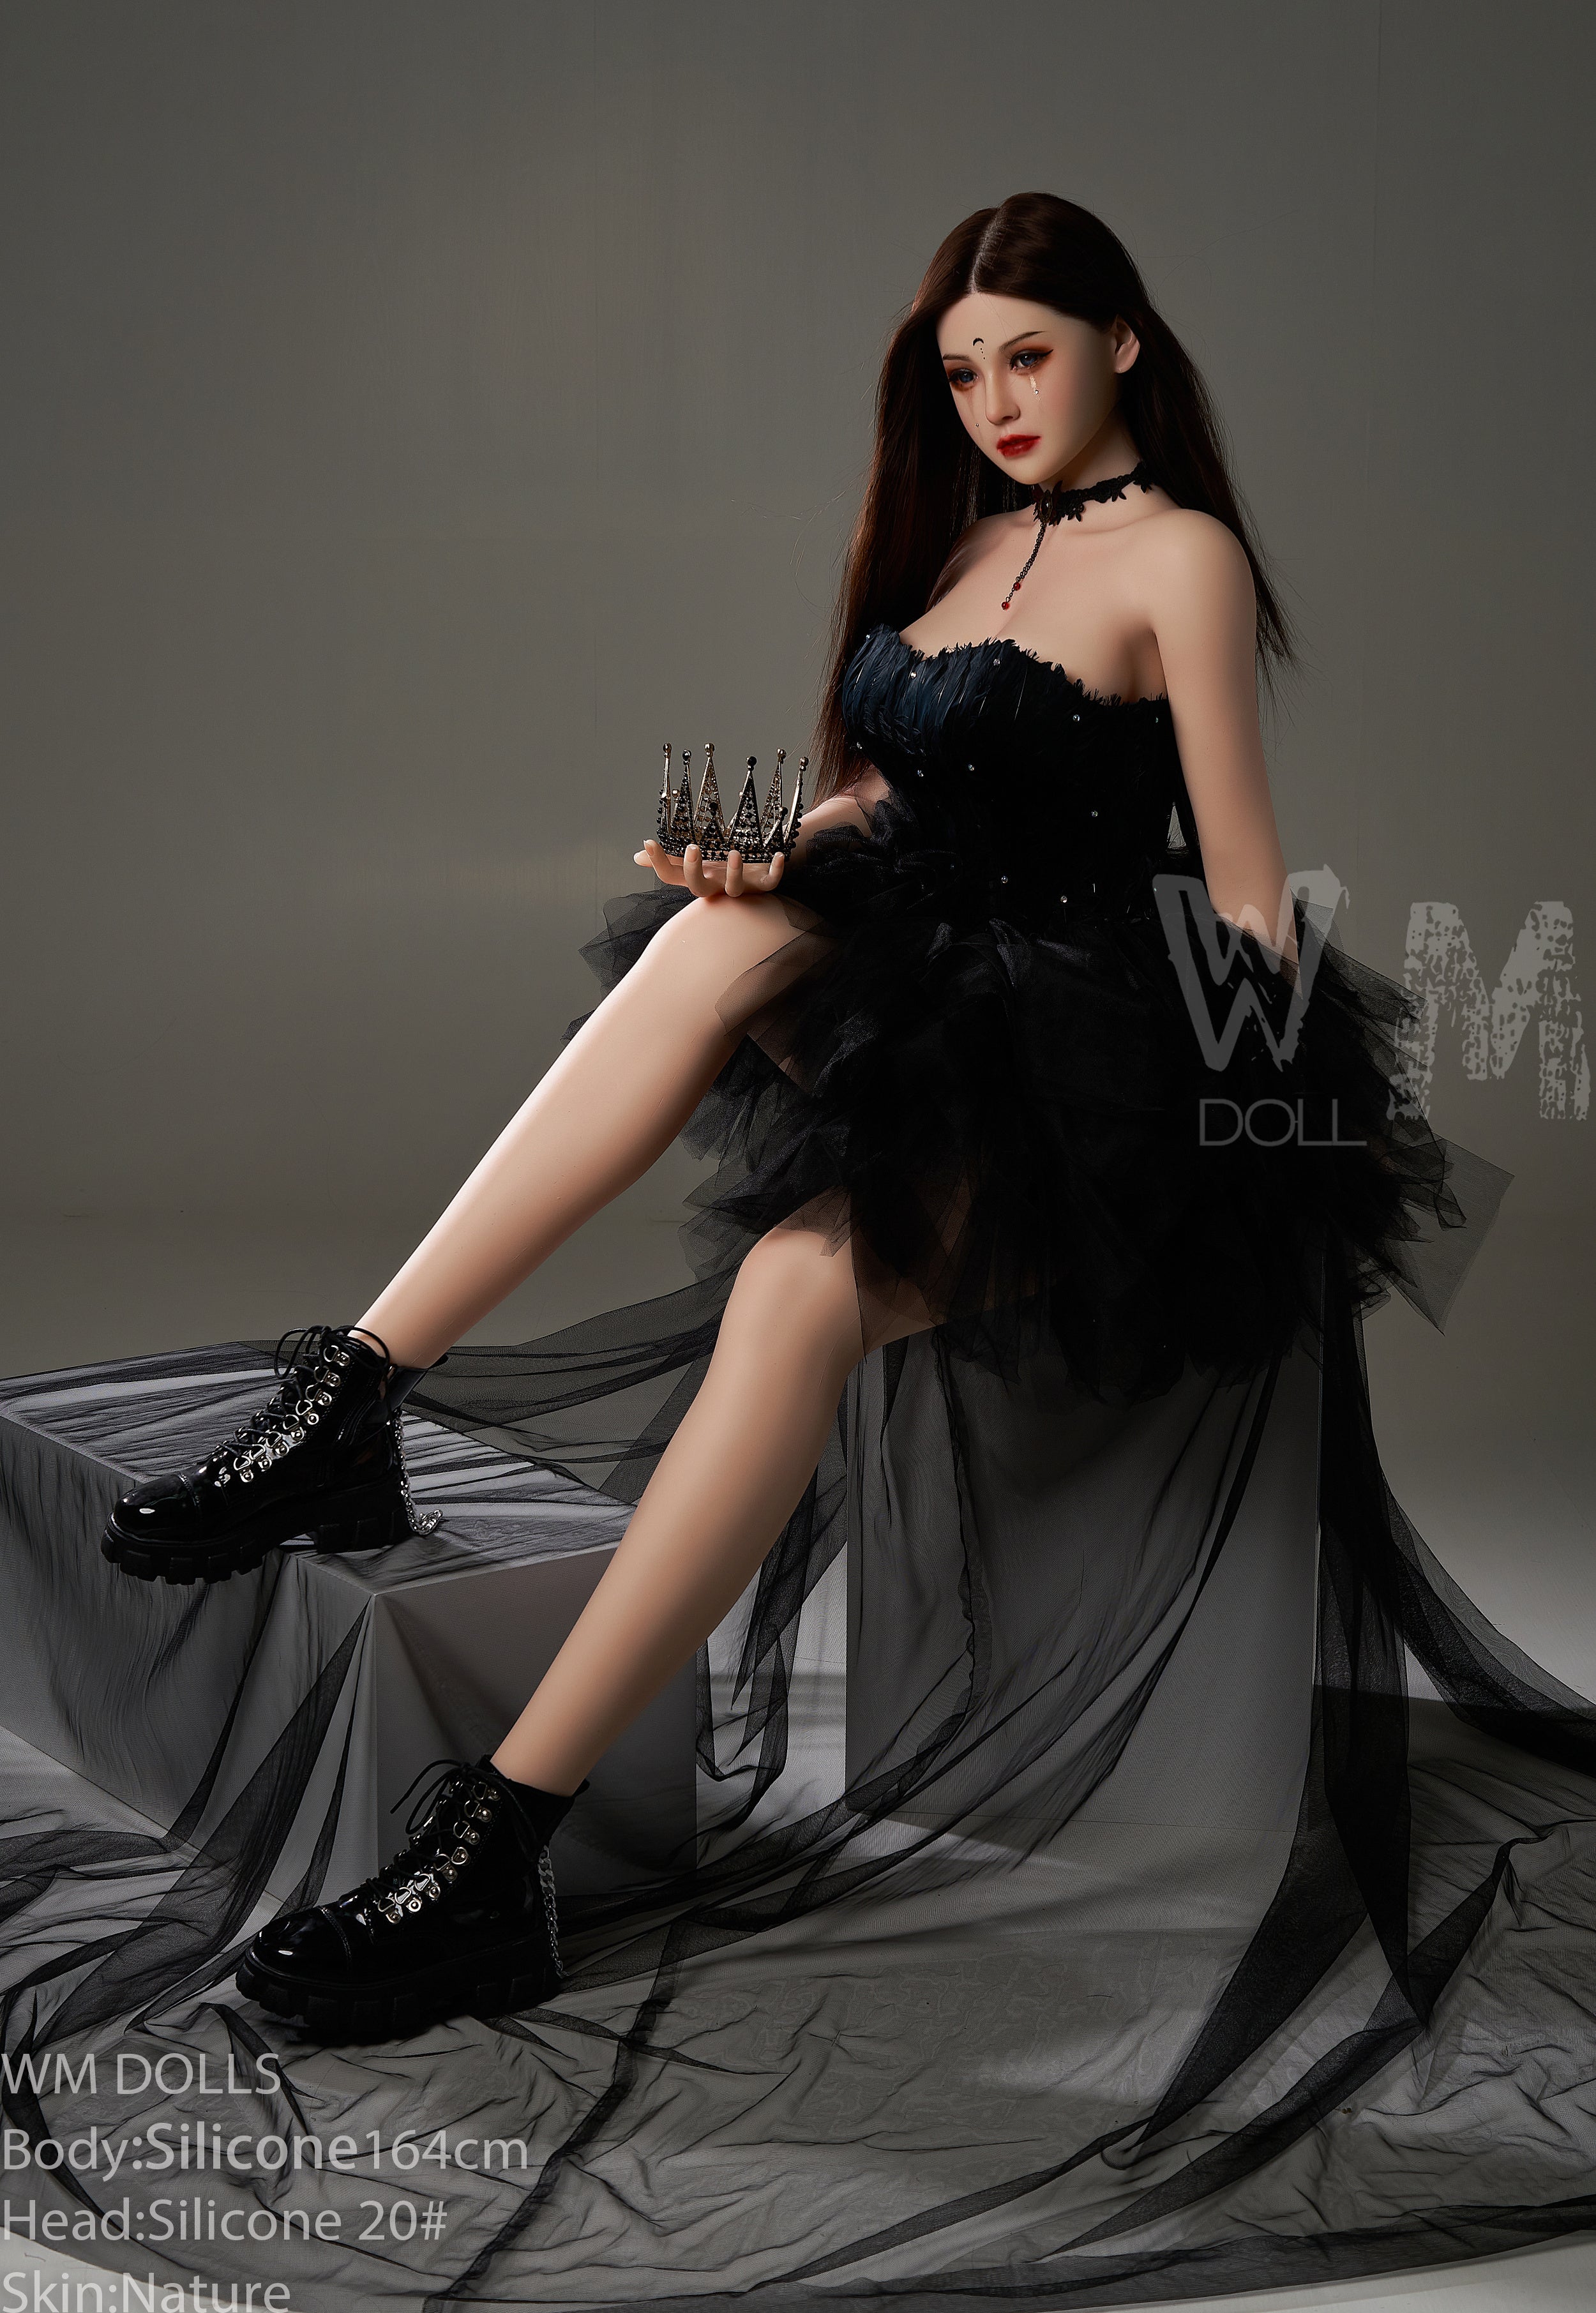 WM Doll 164 cm D Silicone - Reagan | Sex Dolls SG